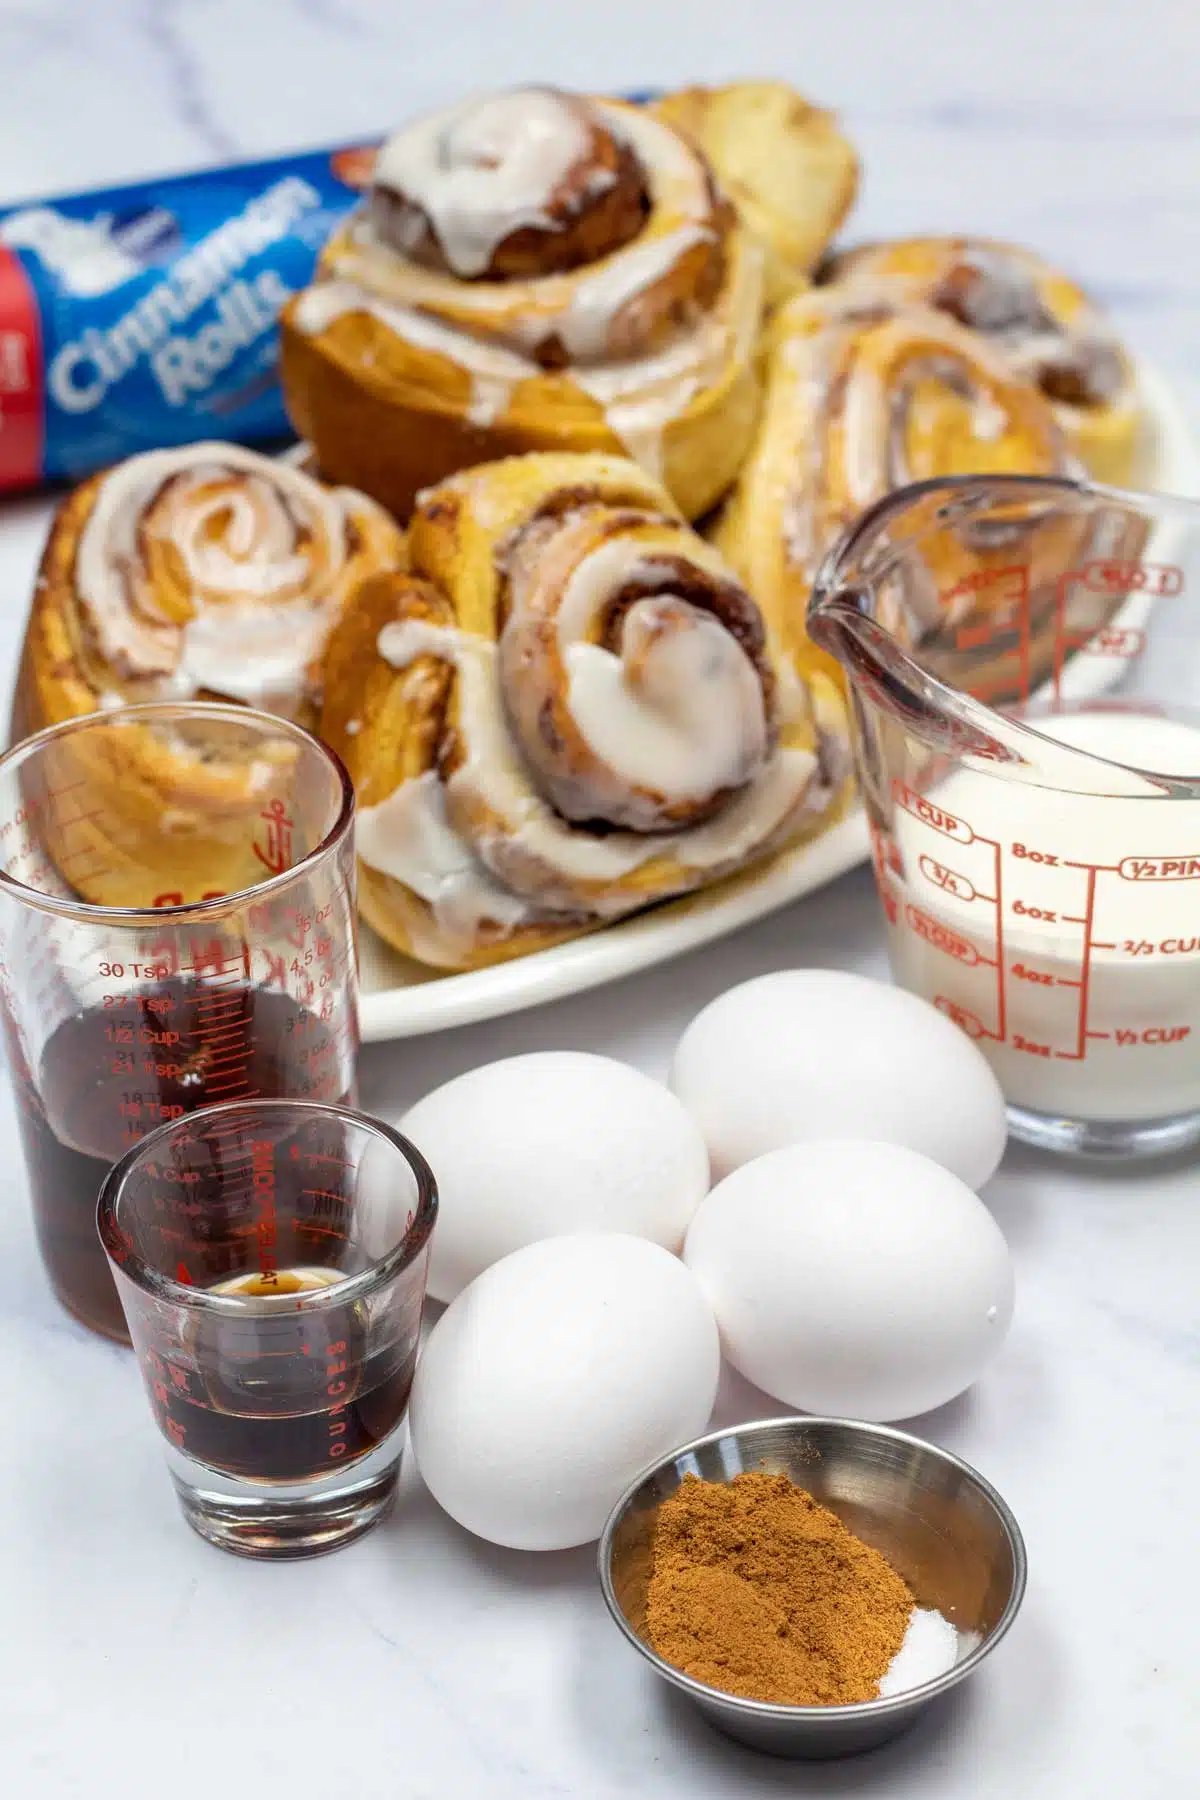 Tall image showing cinnamon roll breakfast casserole ingredients.